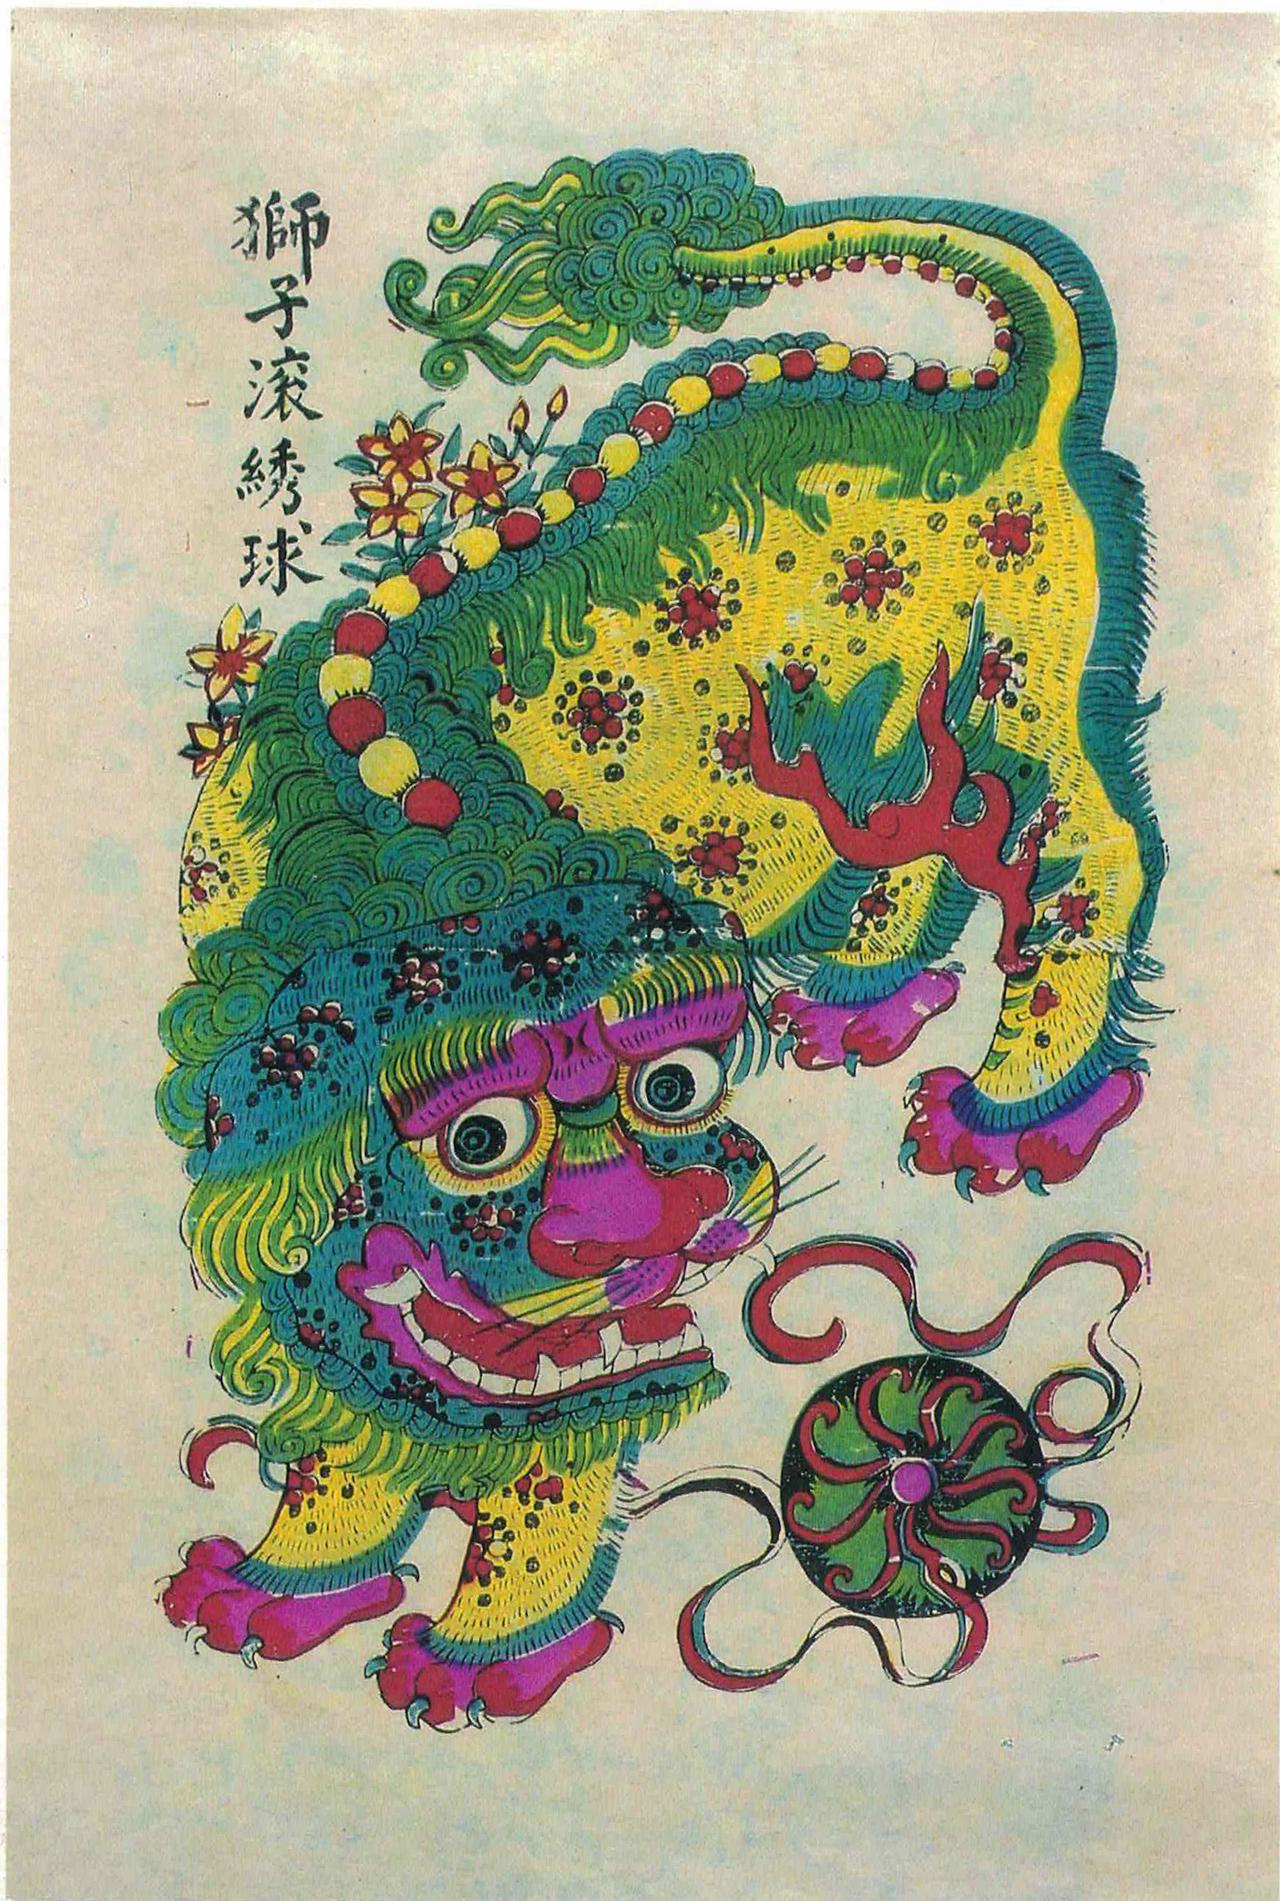 武强年画博物馆供图在神话中,狮子是文殊菩萨的坐骑,也是吉祥如意的